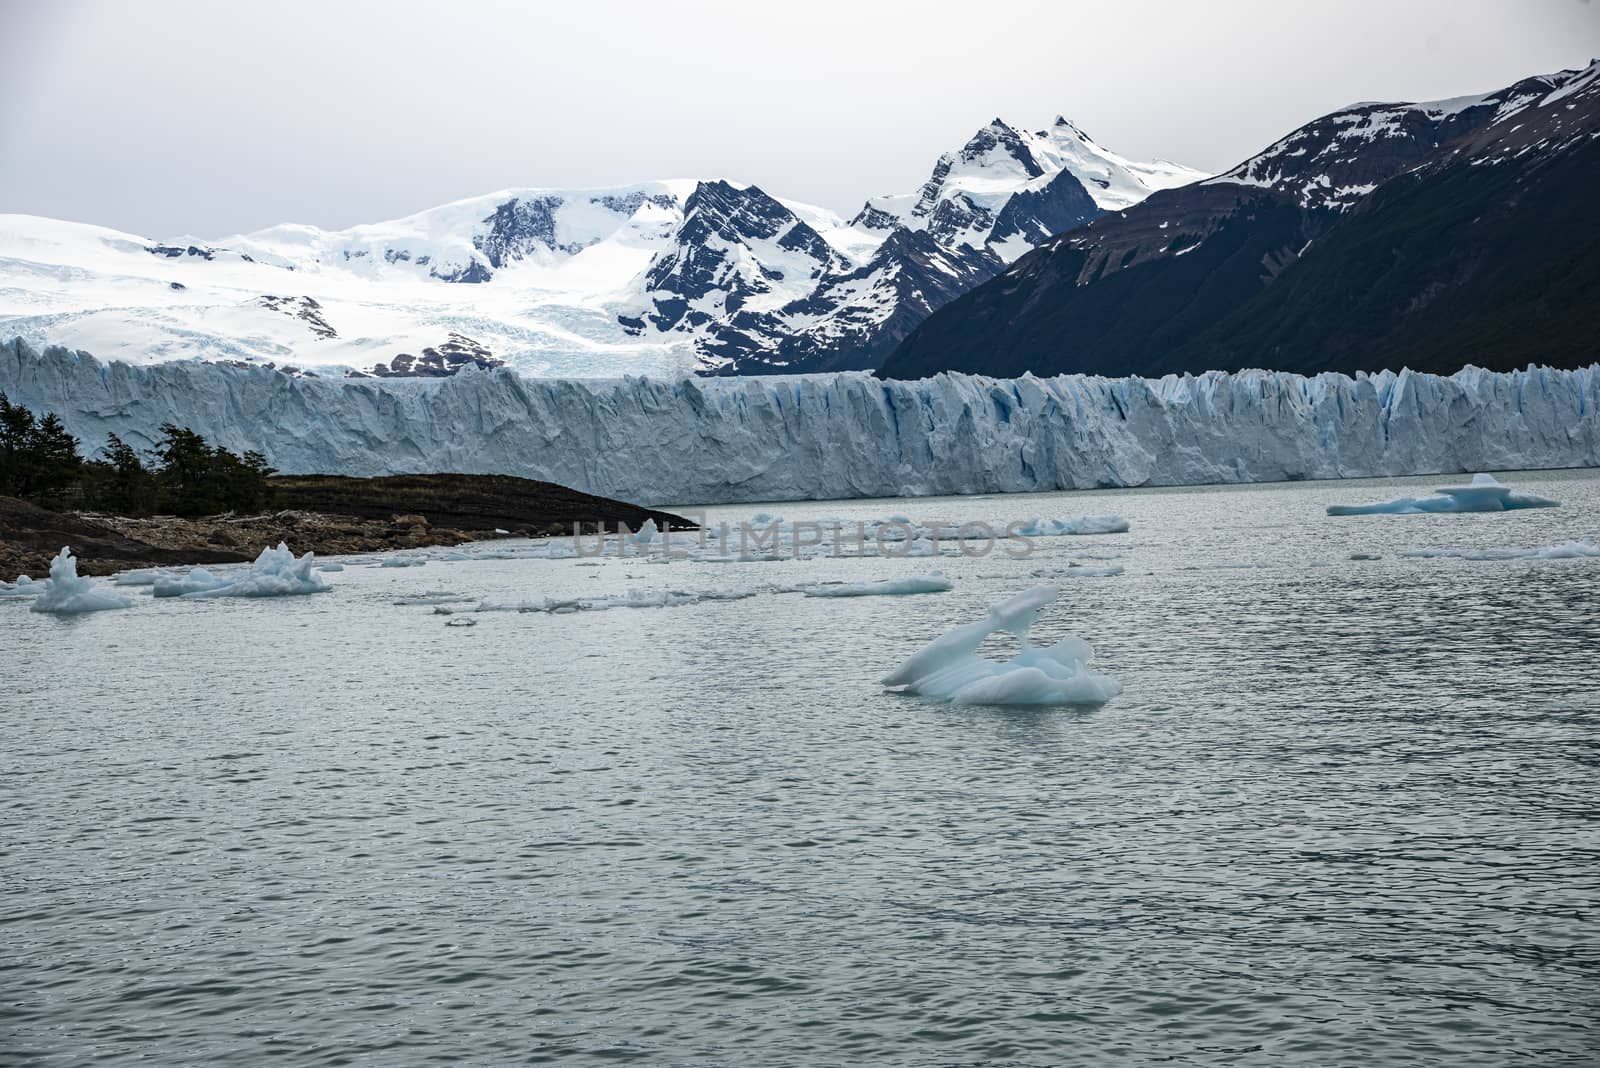 The Perito Moreno Glacier, El Calafate, Argentina by MichaelMou85